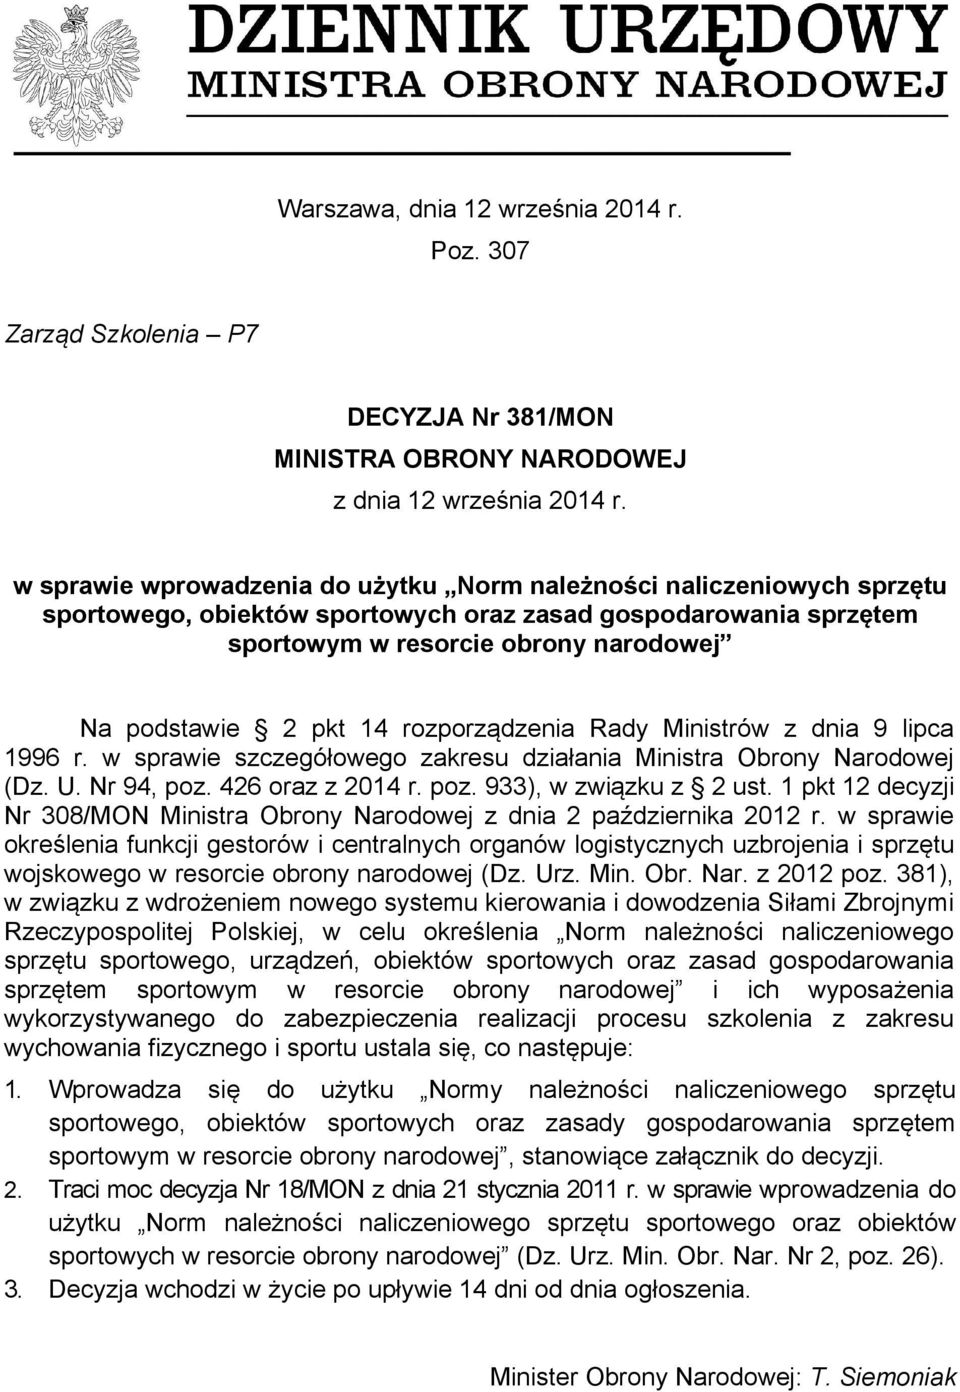 rozporządzenia Rady Ministrów z dnia 9 lipca 1996 r. w sprawie szczegółowego zakresu działania Ministra Obrony Narodowej (Dz. U. Nr 94, poz. 426 oraz z 2014 r. poz. 933), w związku z 2 ust.